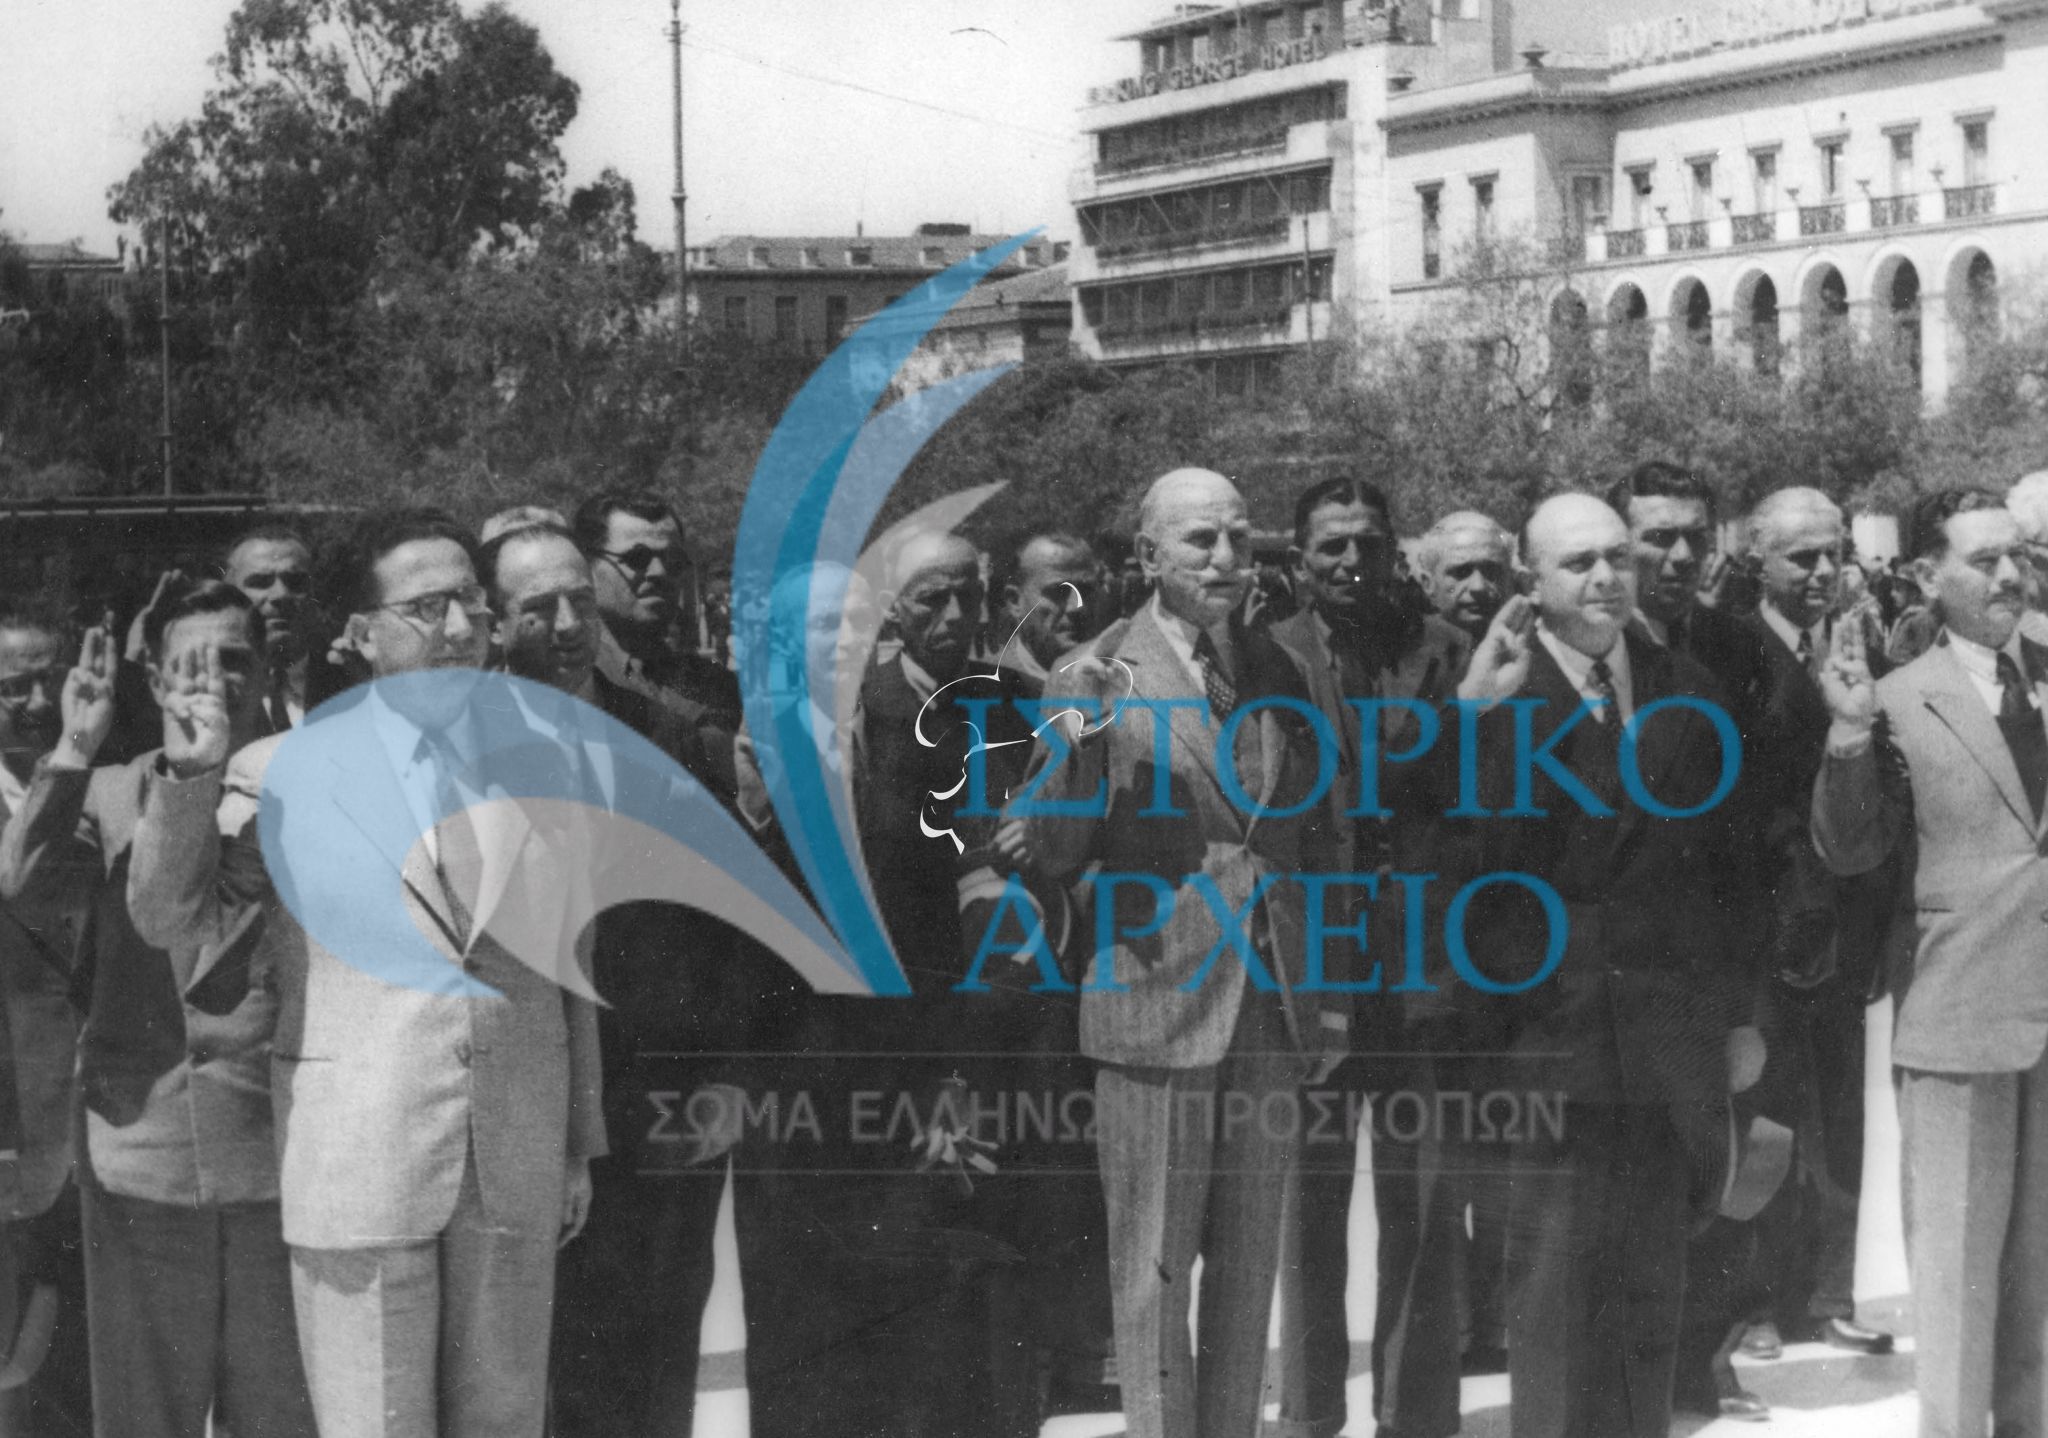 Ο Αντ. Μπενάκης, ο Μ. Σοφιανός και περιφερειακοί έφοροι πρόσκοπων από όλη την Ελλάδα καταθέτουν Στεφάνι στο Μνημείο του Αγνώστου Στρατιώτη στο πλαίσιο του 1ου Συνεδρίου Περιφερειακών Εφόρων που έγινε τον Απρίλιο του 1946.